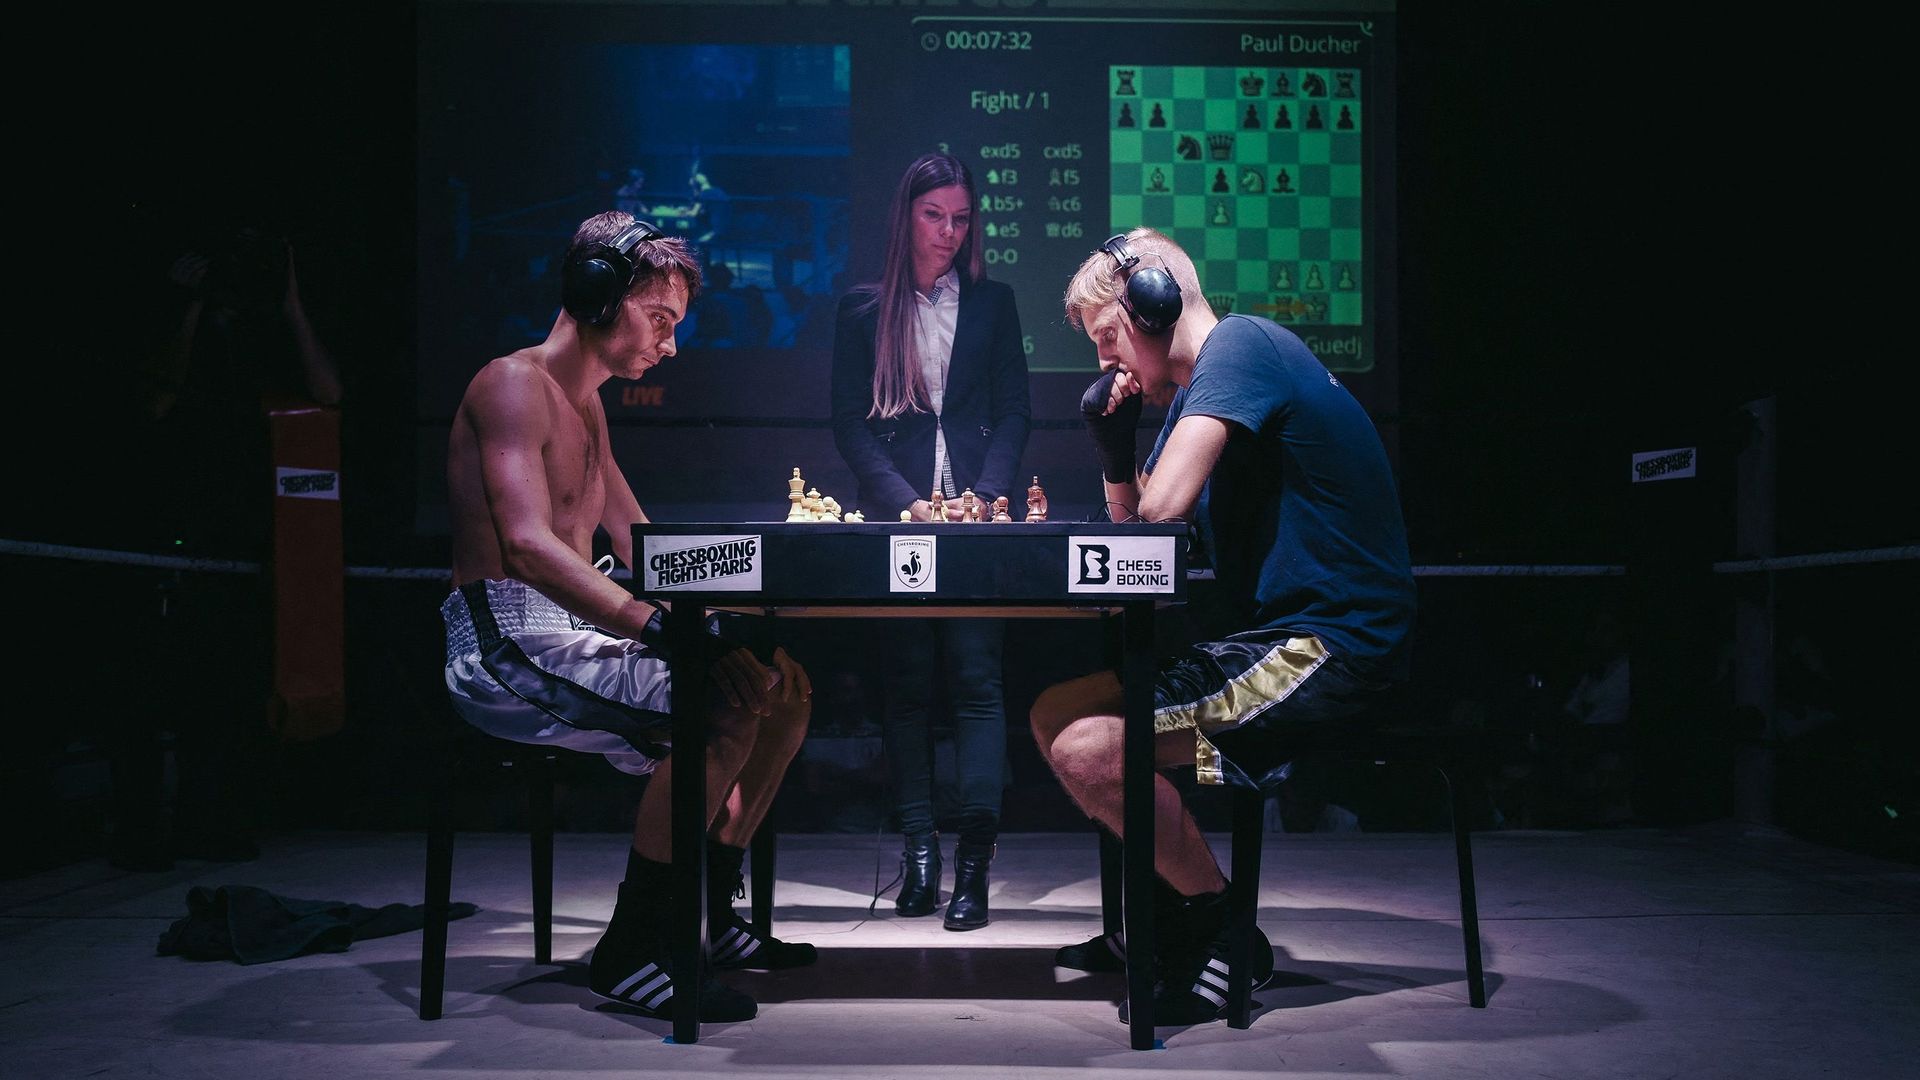 Le chessboxing, fusion "magique" entre le corps et l'esprit.